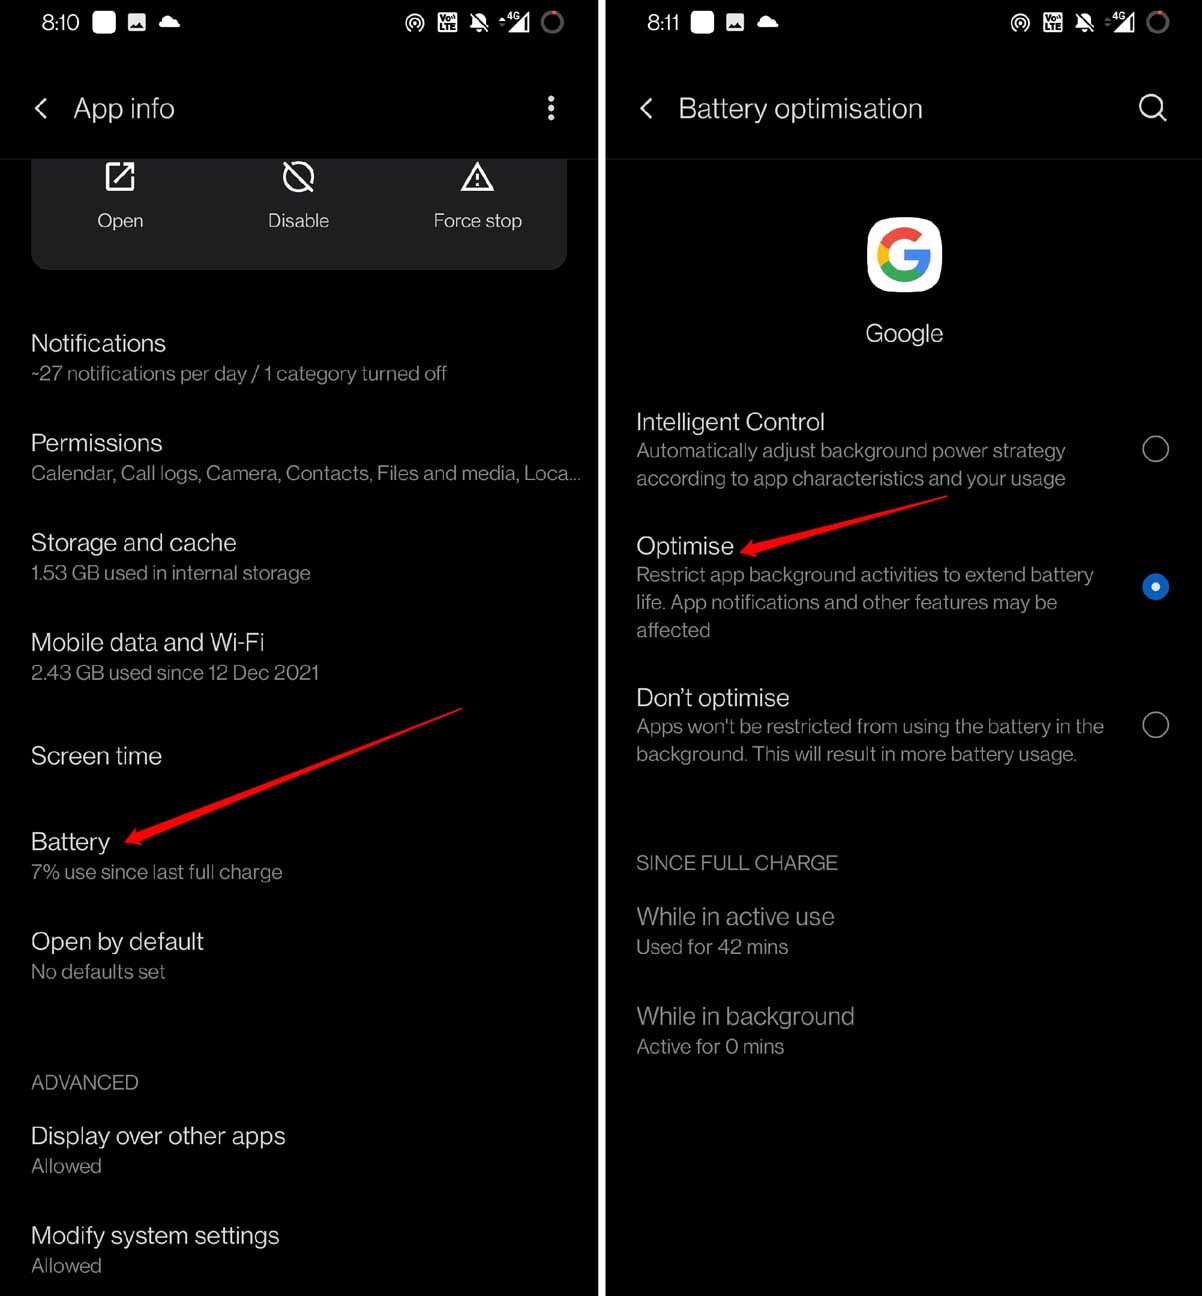 optimize battery usage for Google app